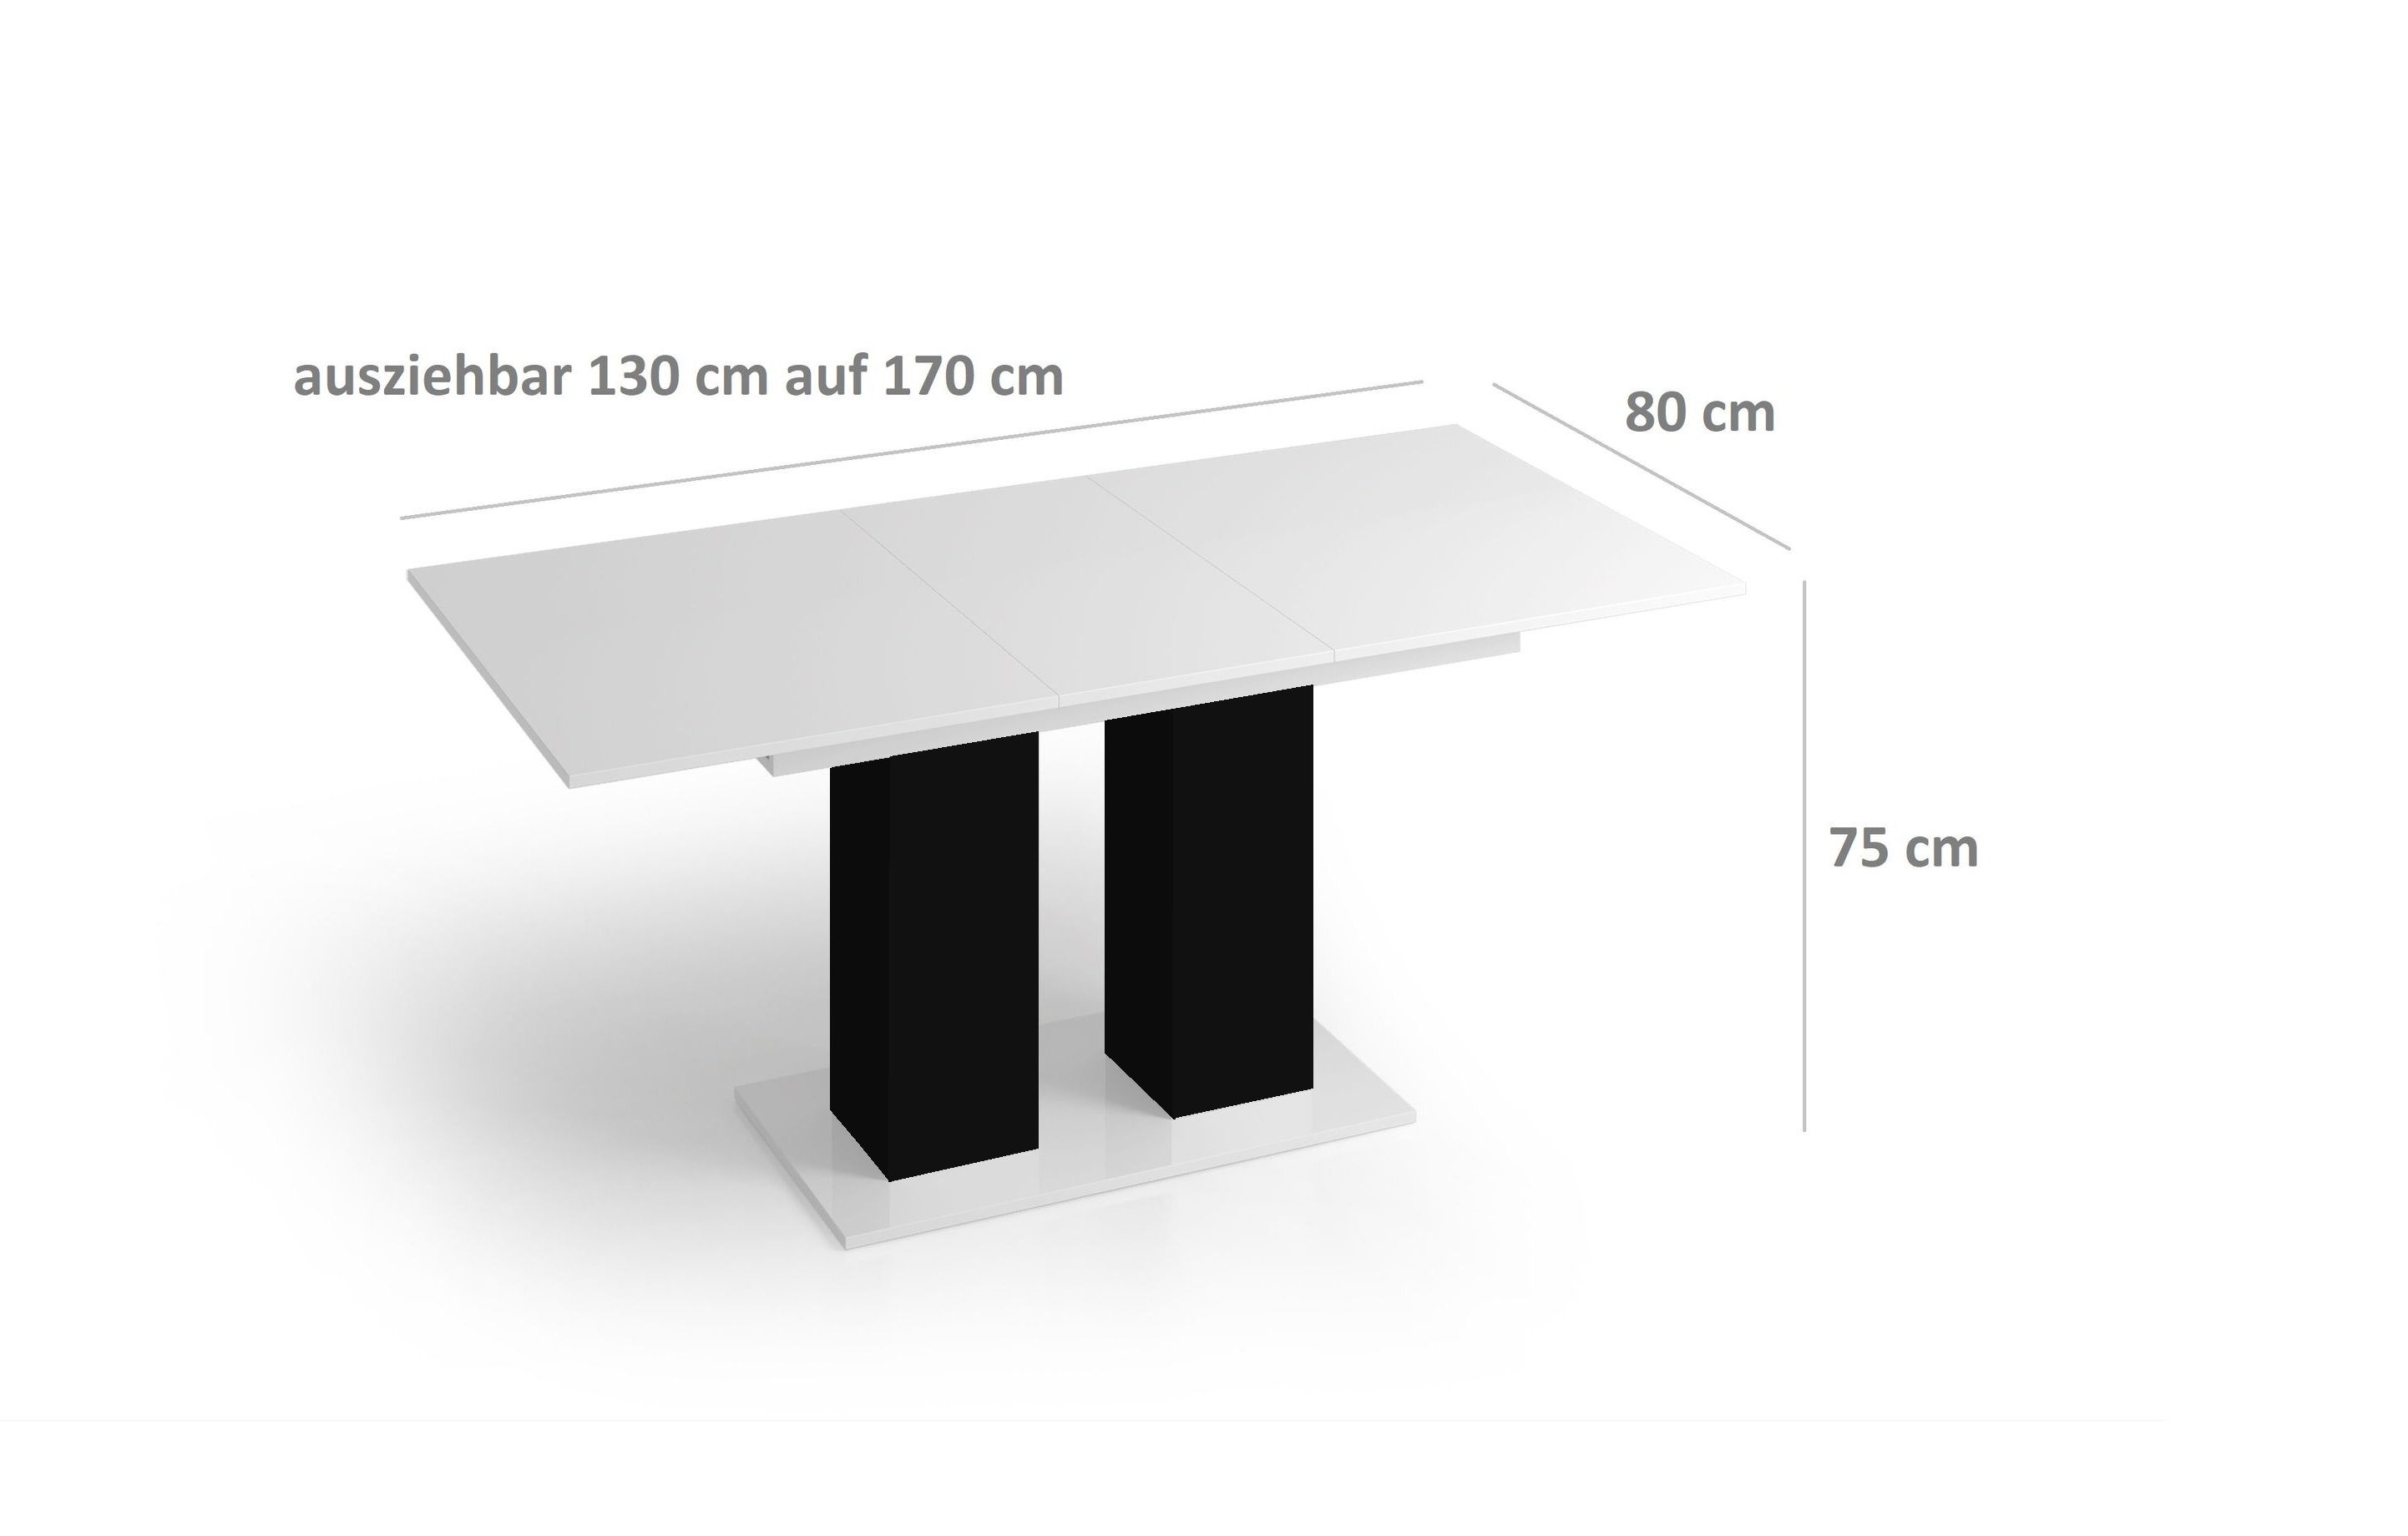 designimpex Esstisch Hochglanz / Weiß DE-1 ausziehbar 170 Schwarz Weiß Design bis Hochglanz 130 Schwarz matt - Hochglanz Tisch